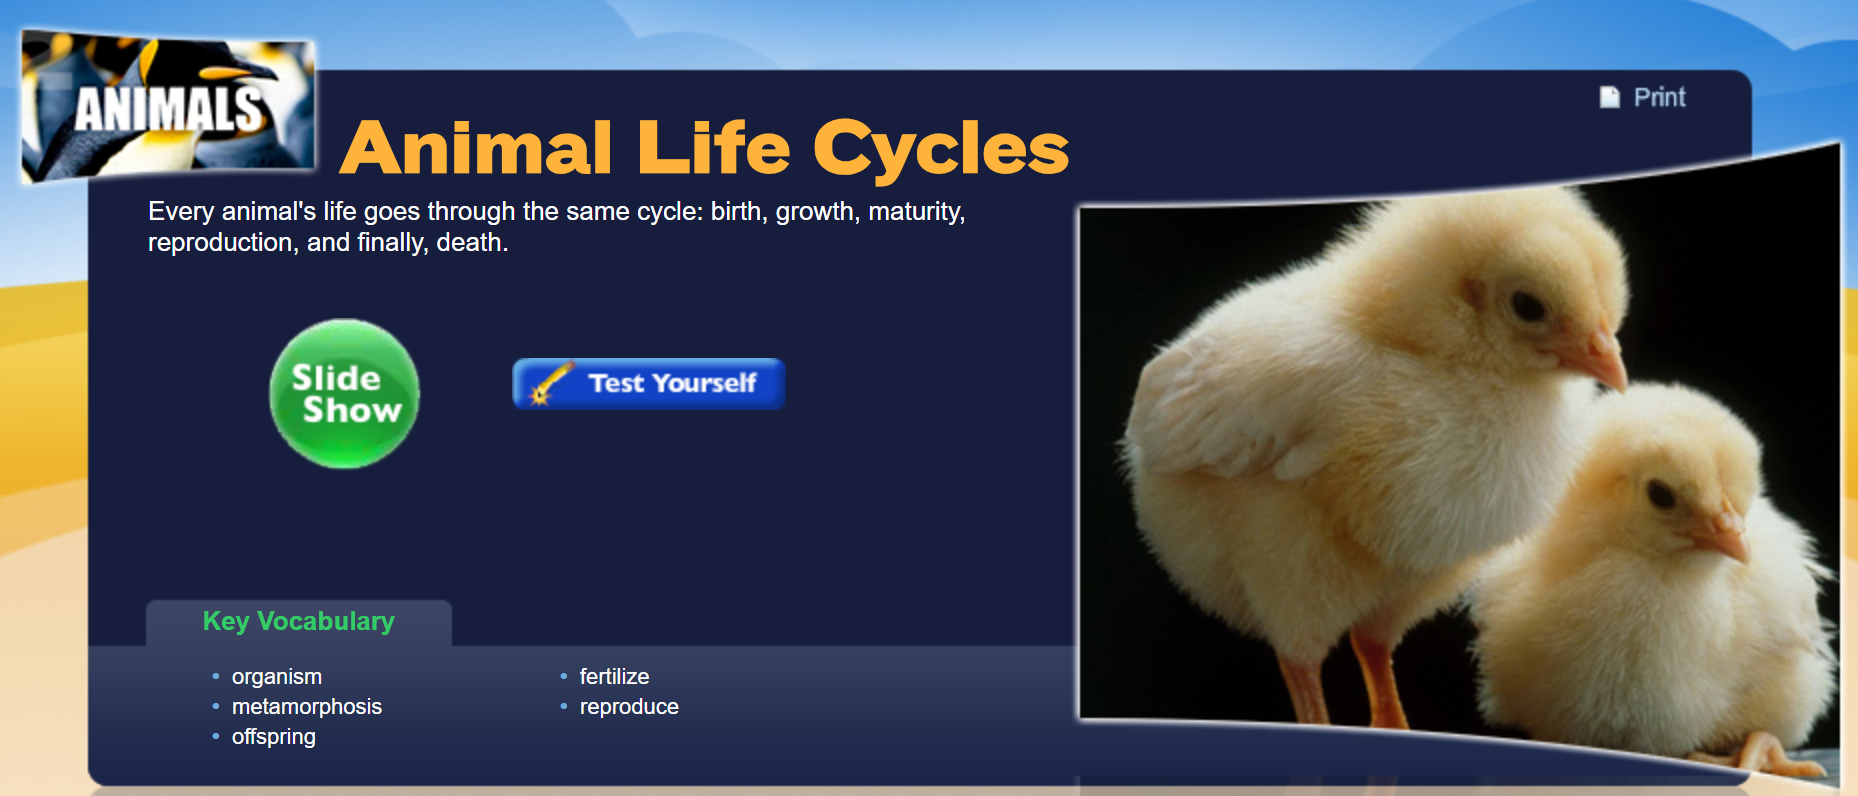 Animal Life Cycles -  slide show